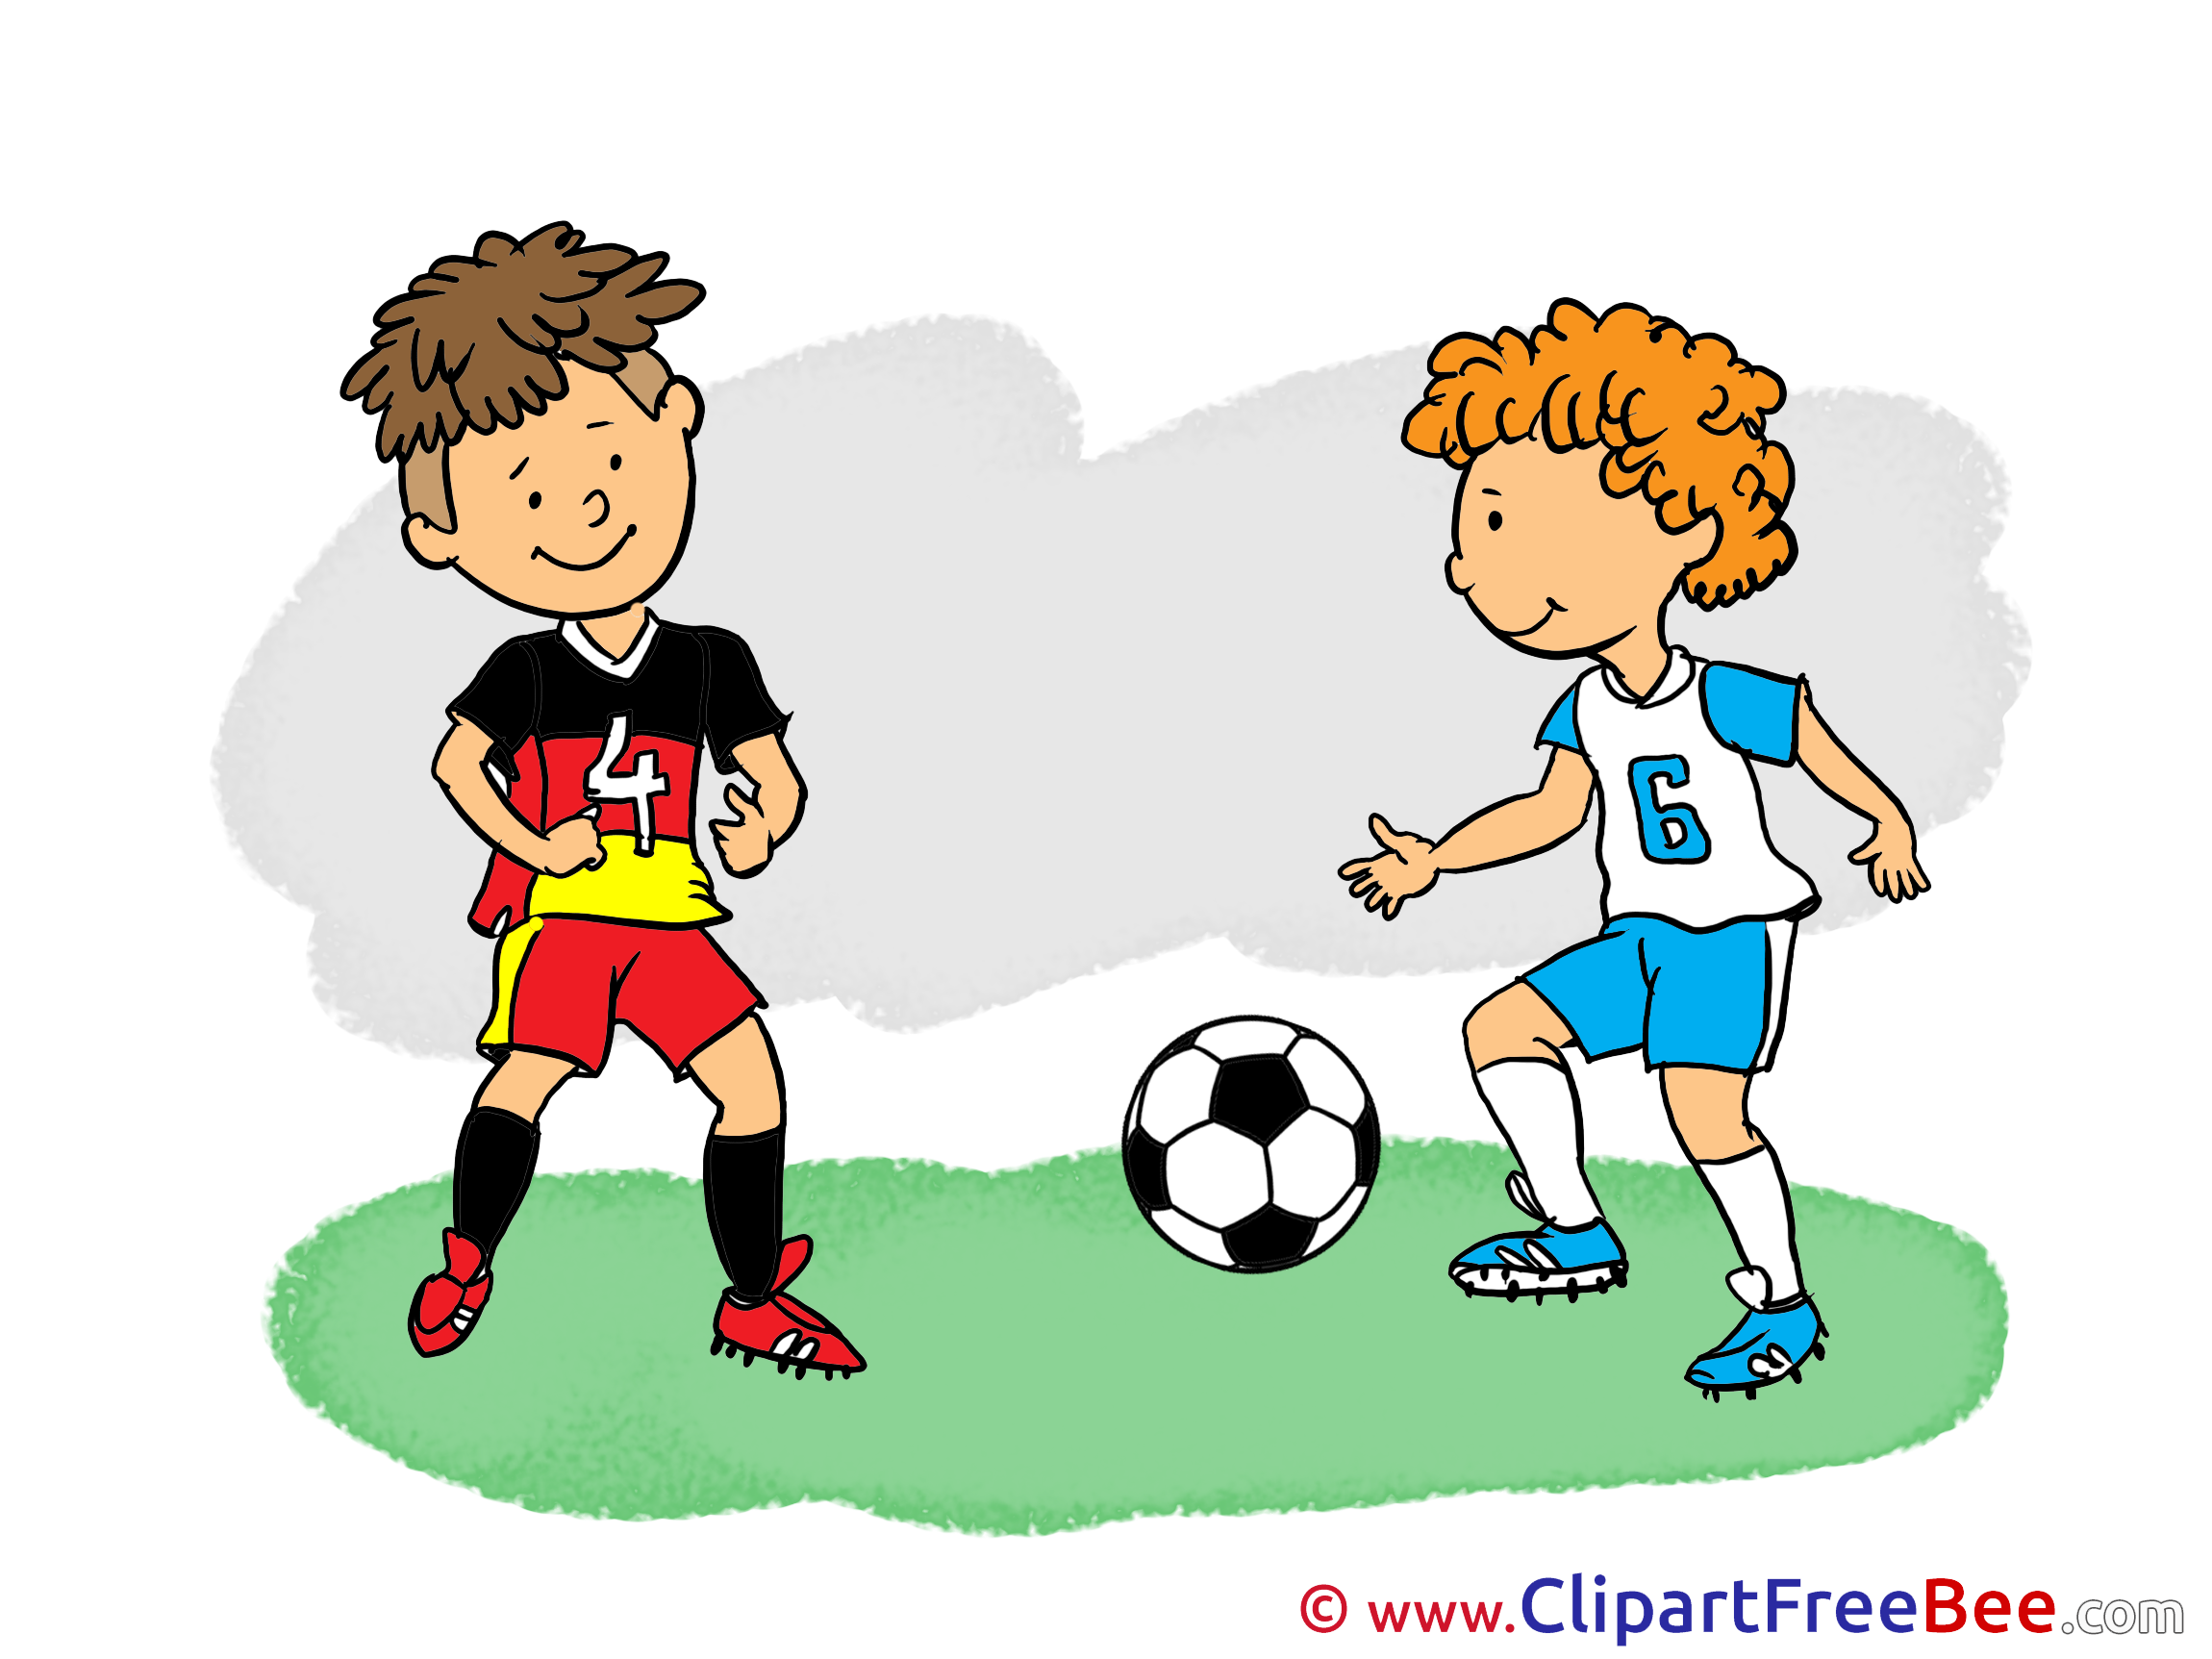 Футбол играли пели. Футбольные иллюстрации. Футбол картинки для детей. Картинки на тему футбол для детей. Картинки футбол для детей дошкольного возраста.